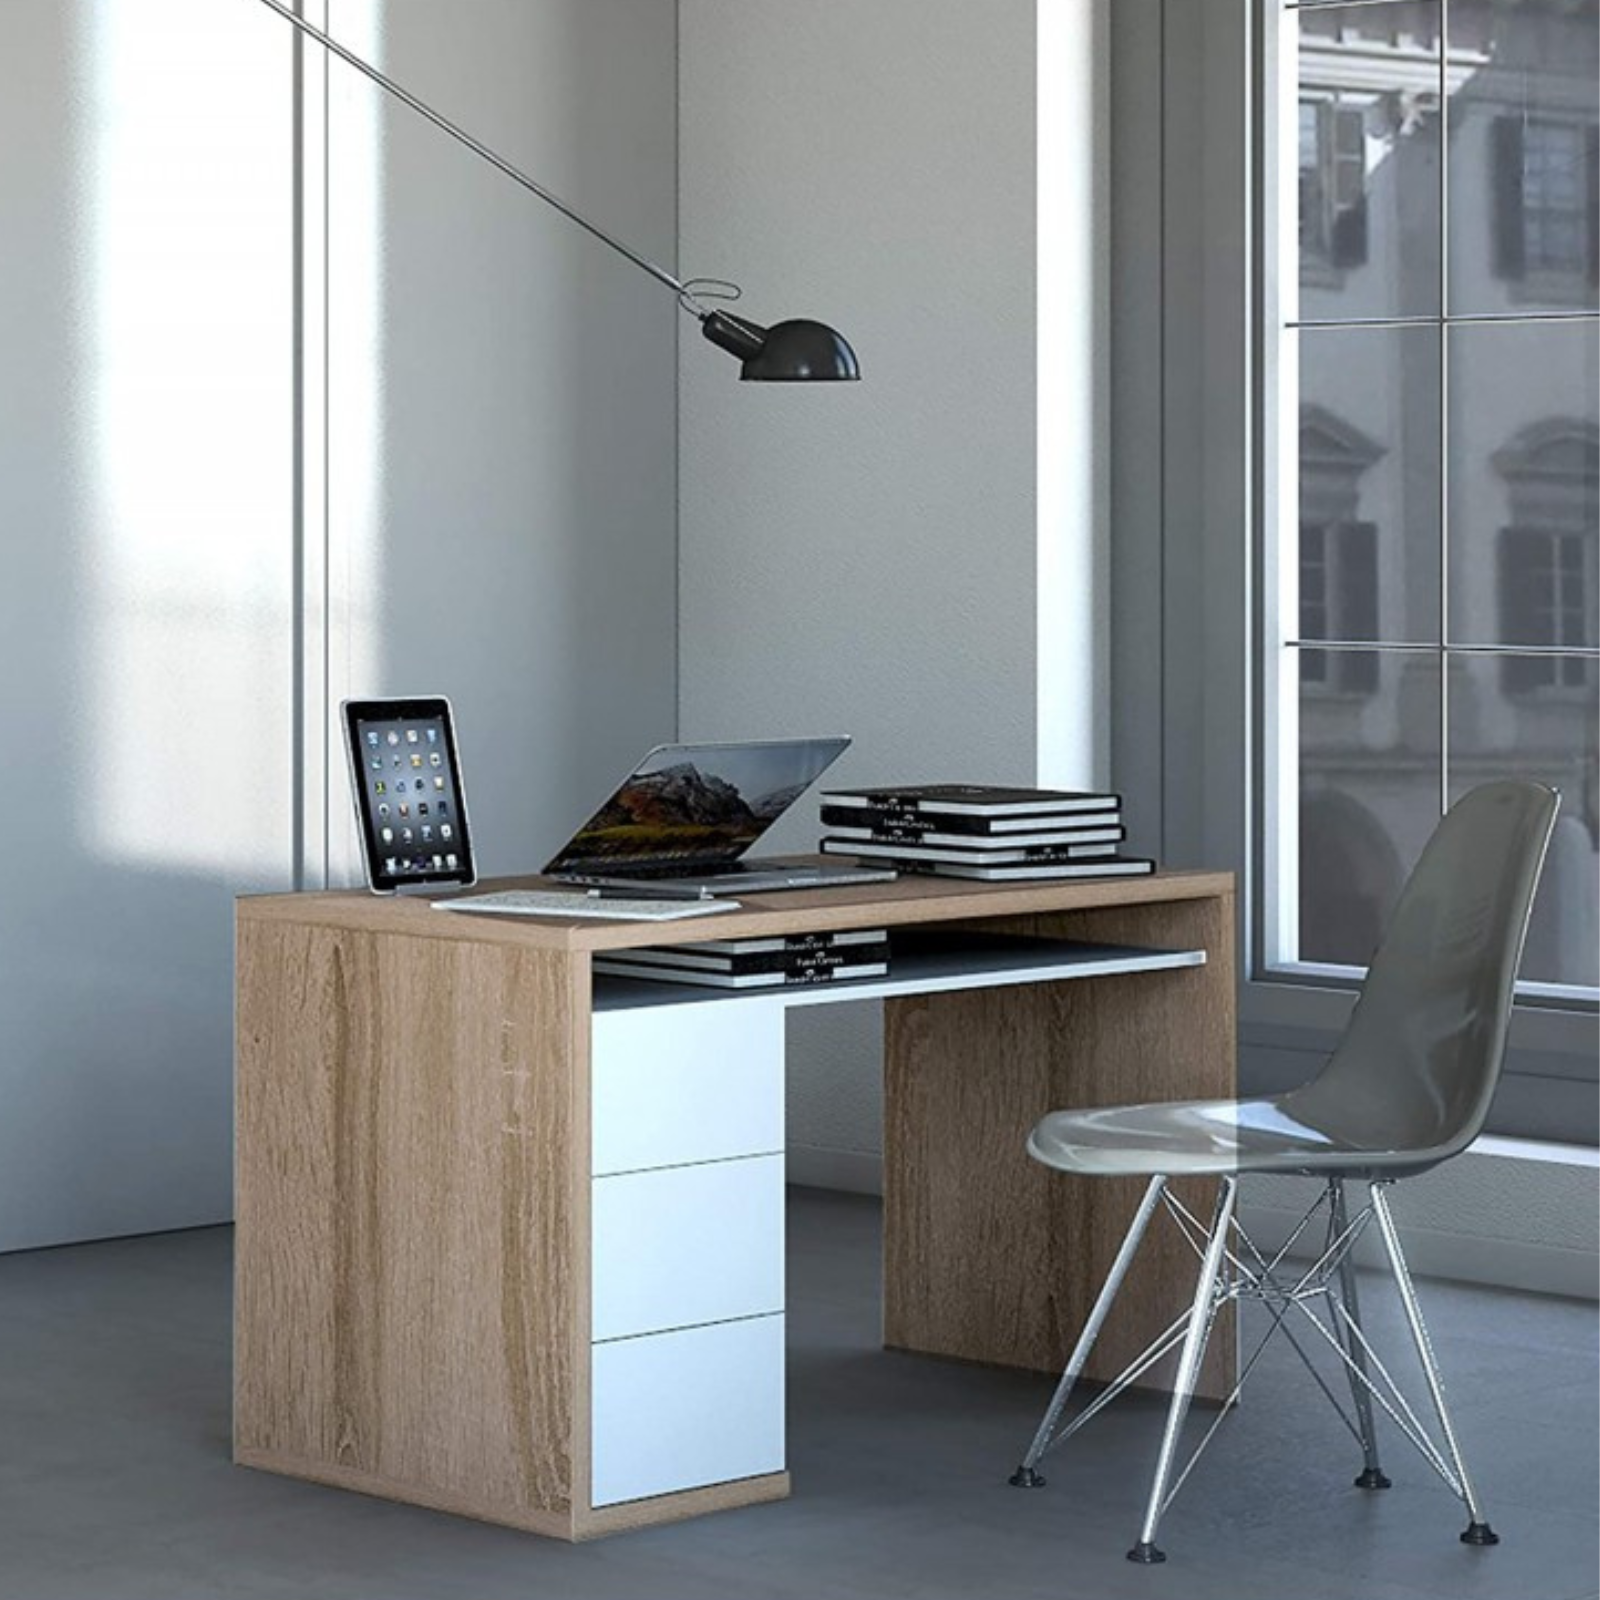 Scrivania da ufficio o camera "Litchfield" design moderno effetto finitura in legno con 3 cassetti laterali